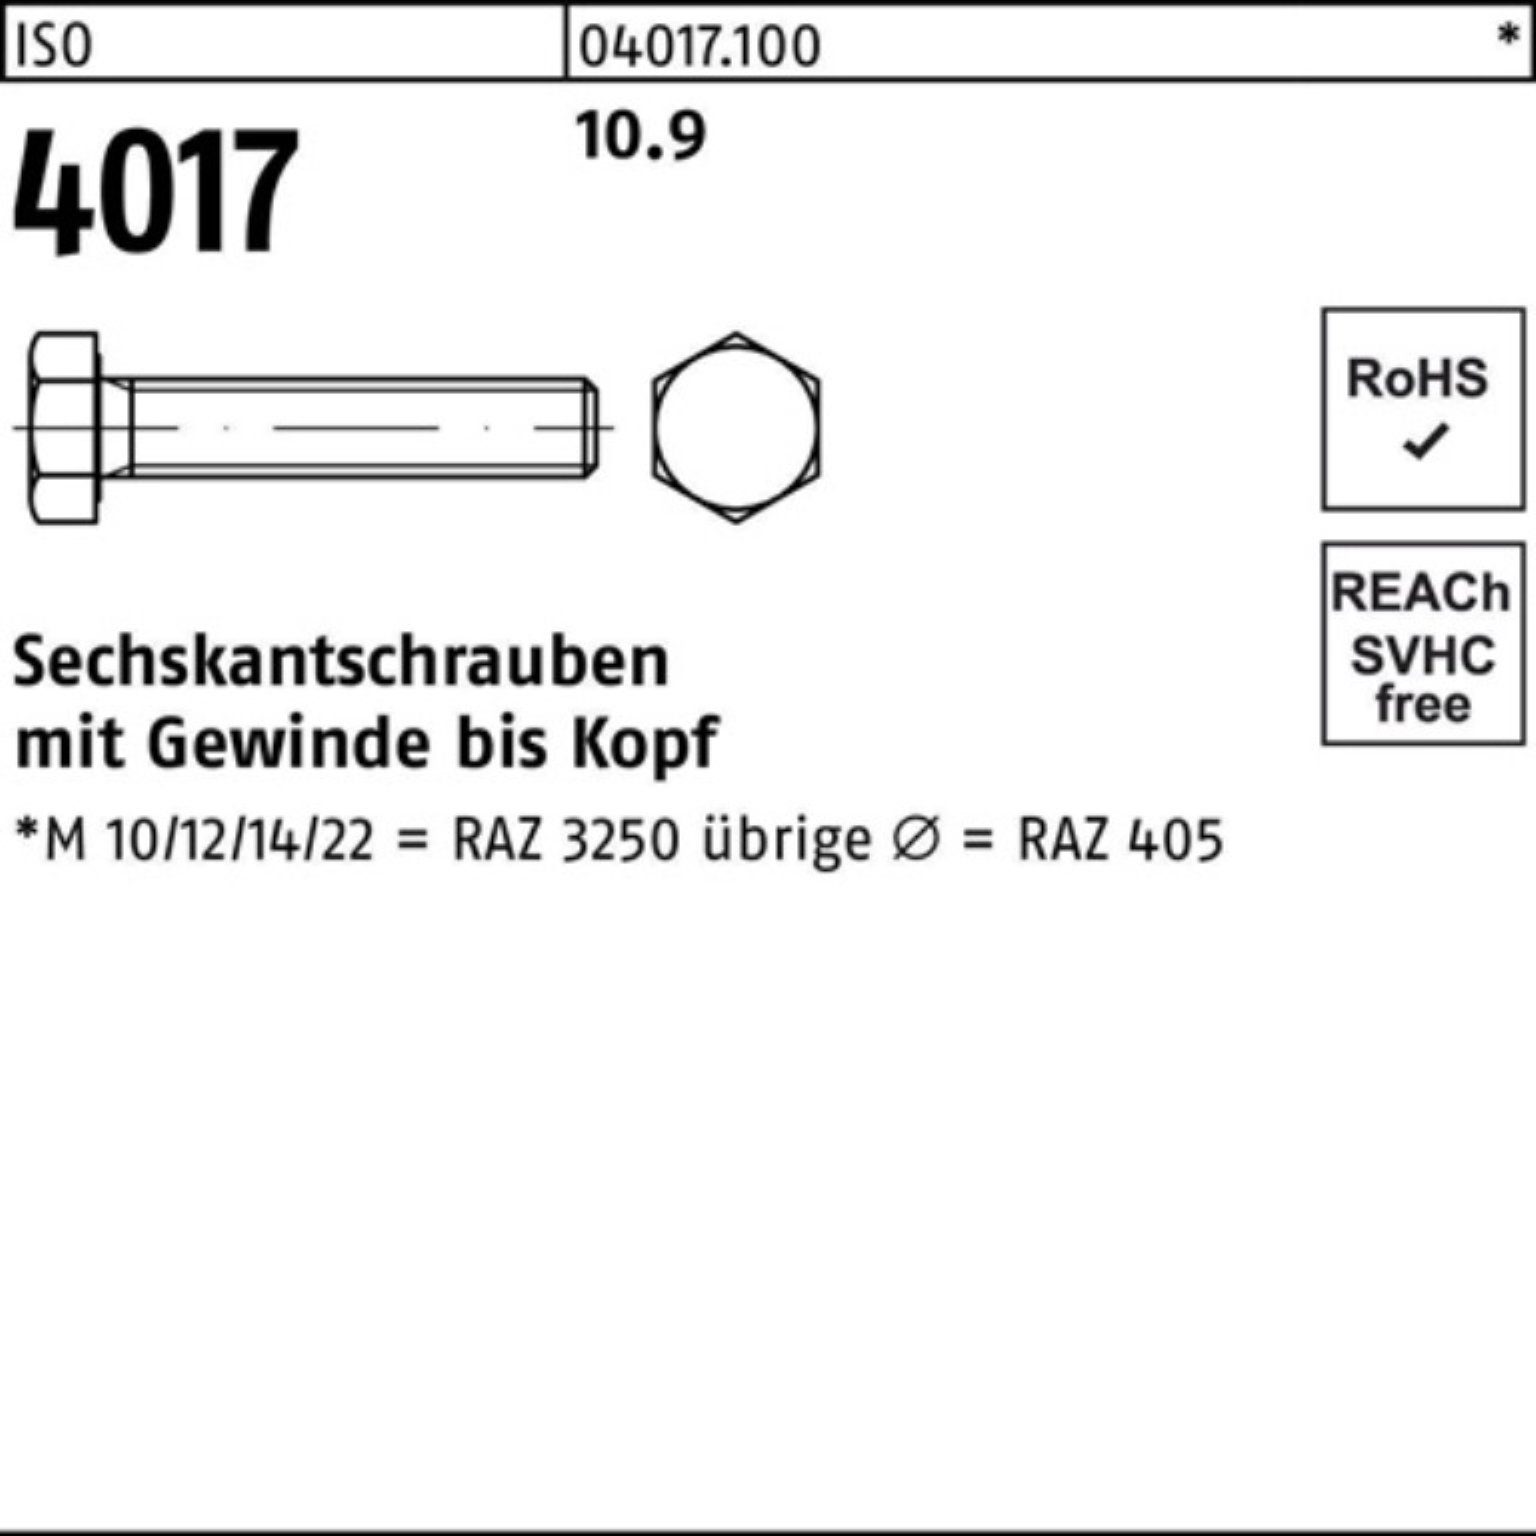 Bufab Sechskantschraube 100er Pack 35 VG Sechskantschraube Stück 4017 100 M10x 10.9 ISO 4 ISO